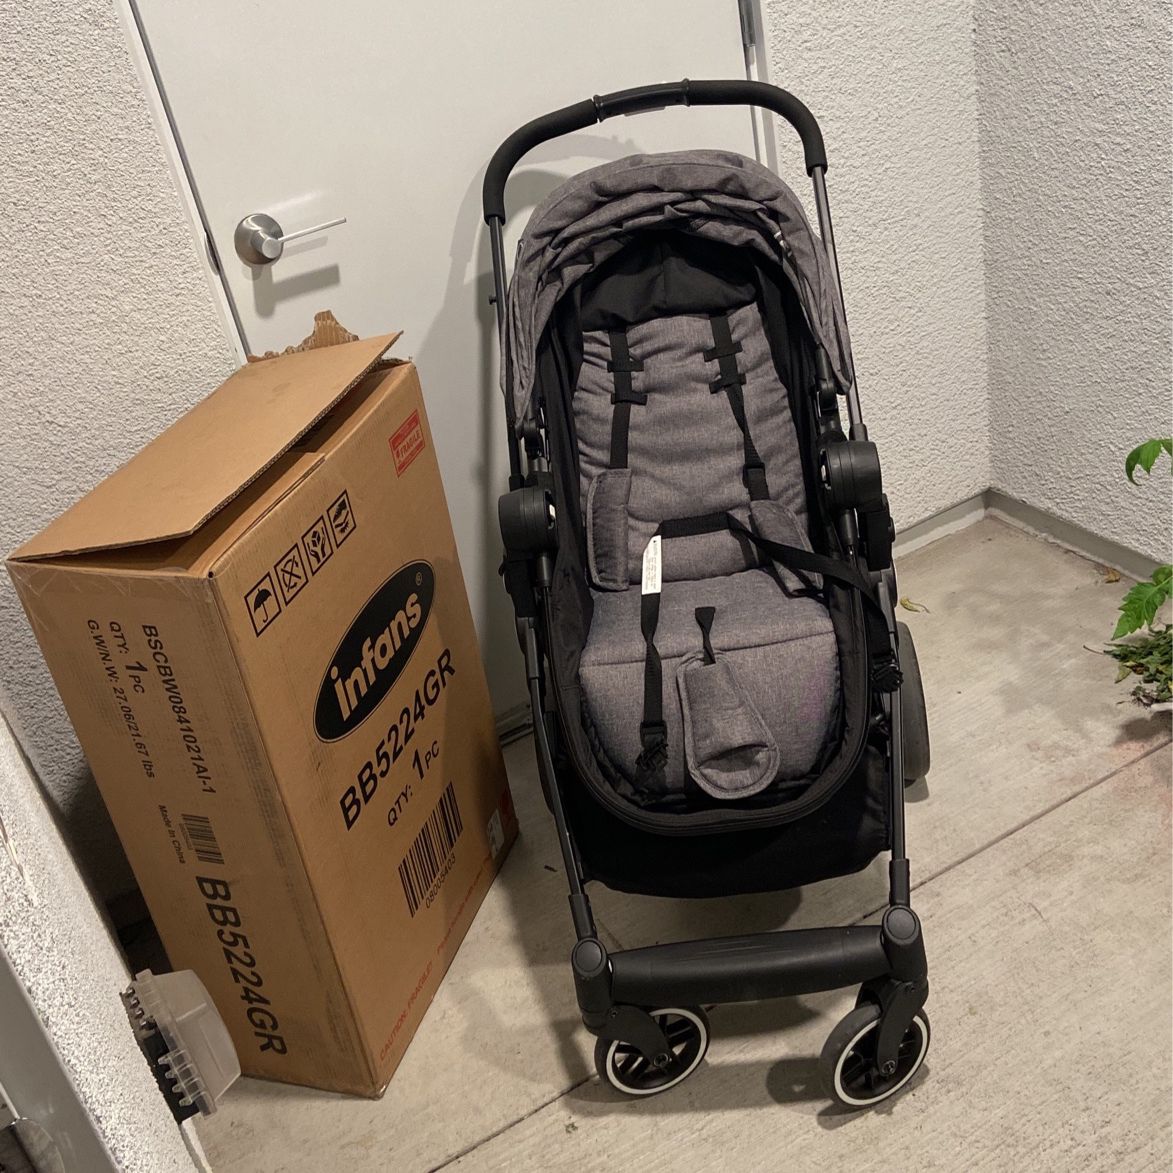 Infans Baby stroller